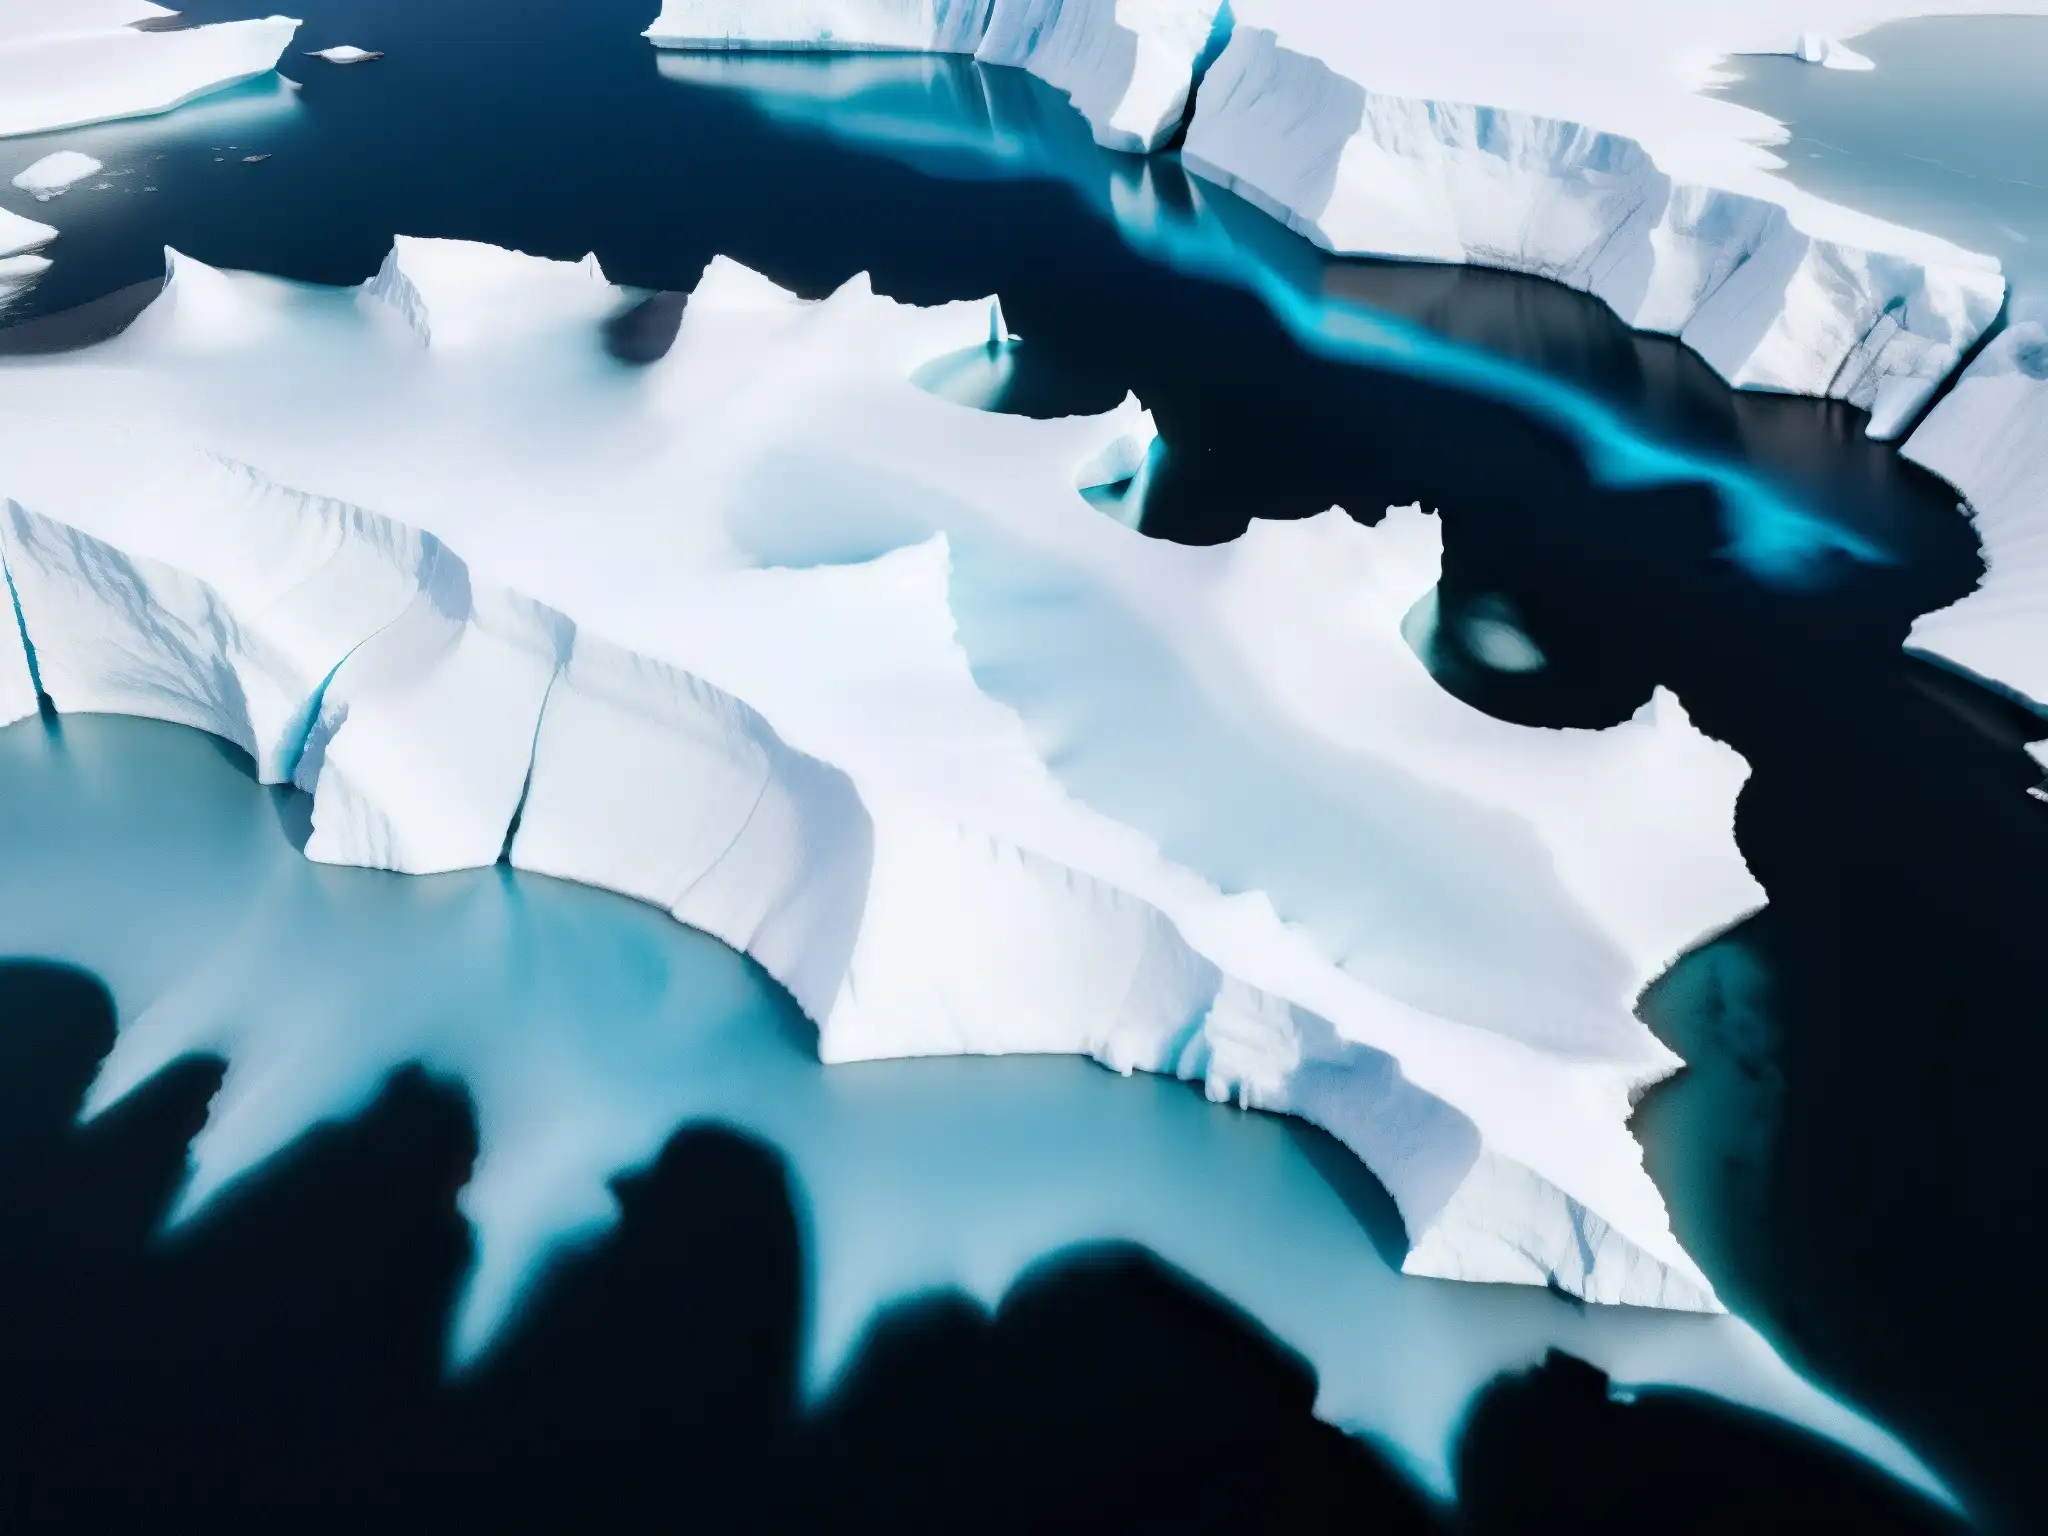 Imponente glaciar derritiéndose, muestra detalles de formaciones de hielo y grietas azules, impacto del calentamiento global en regiones polares